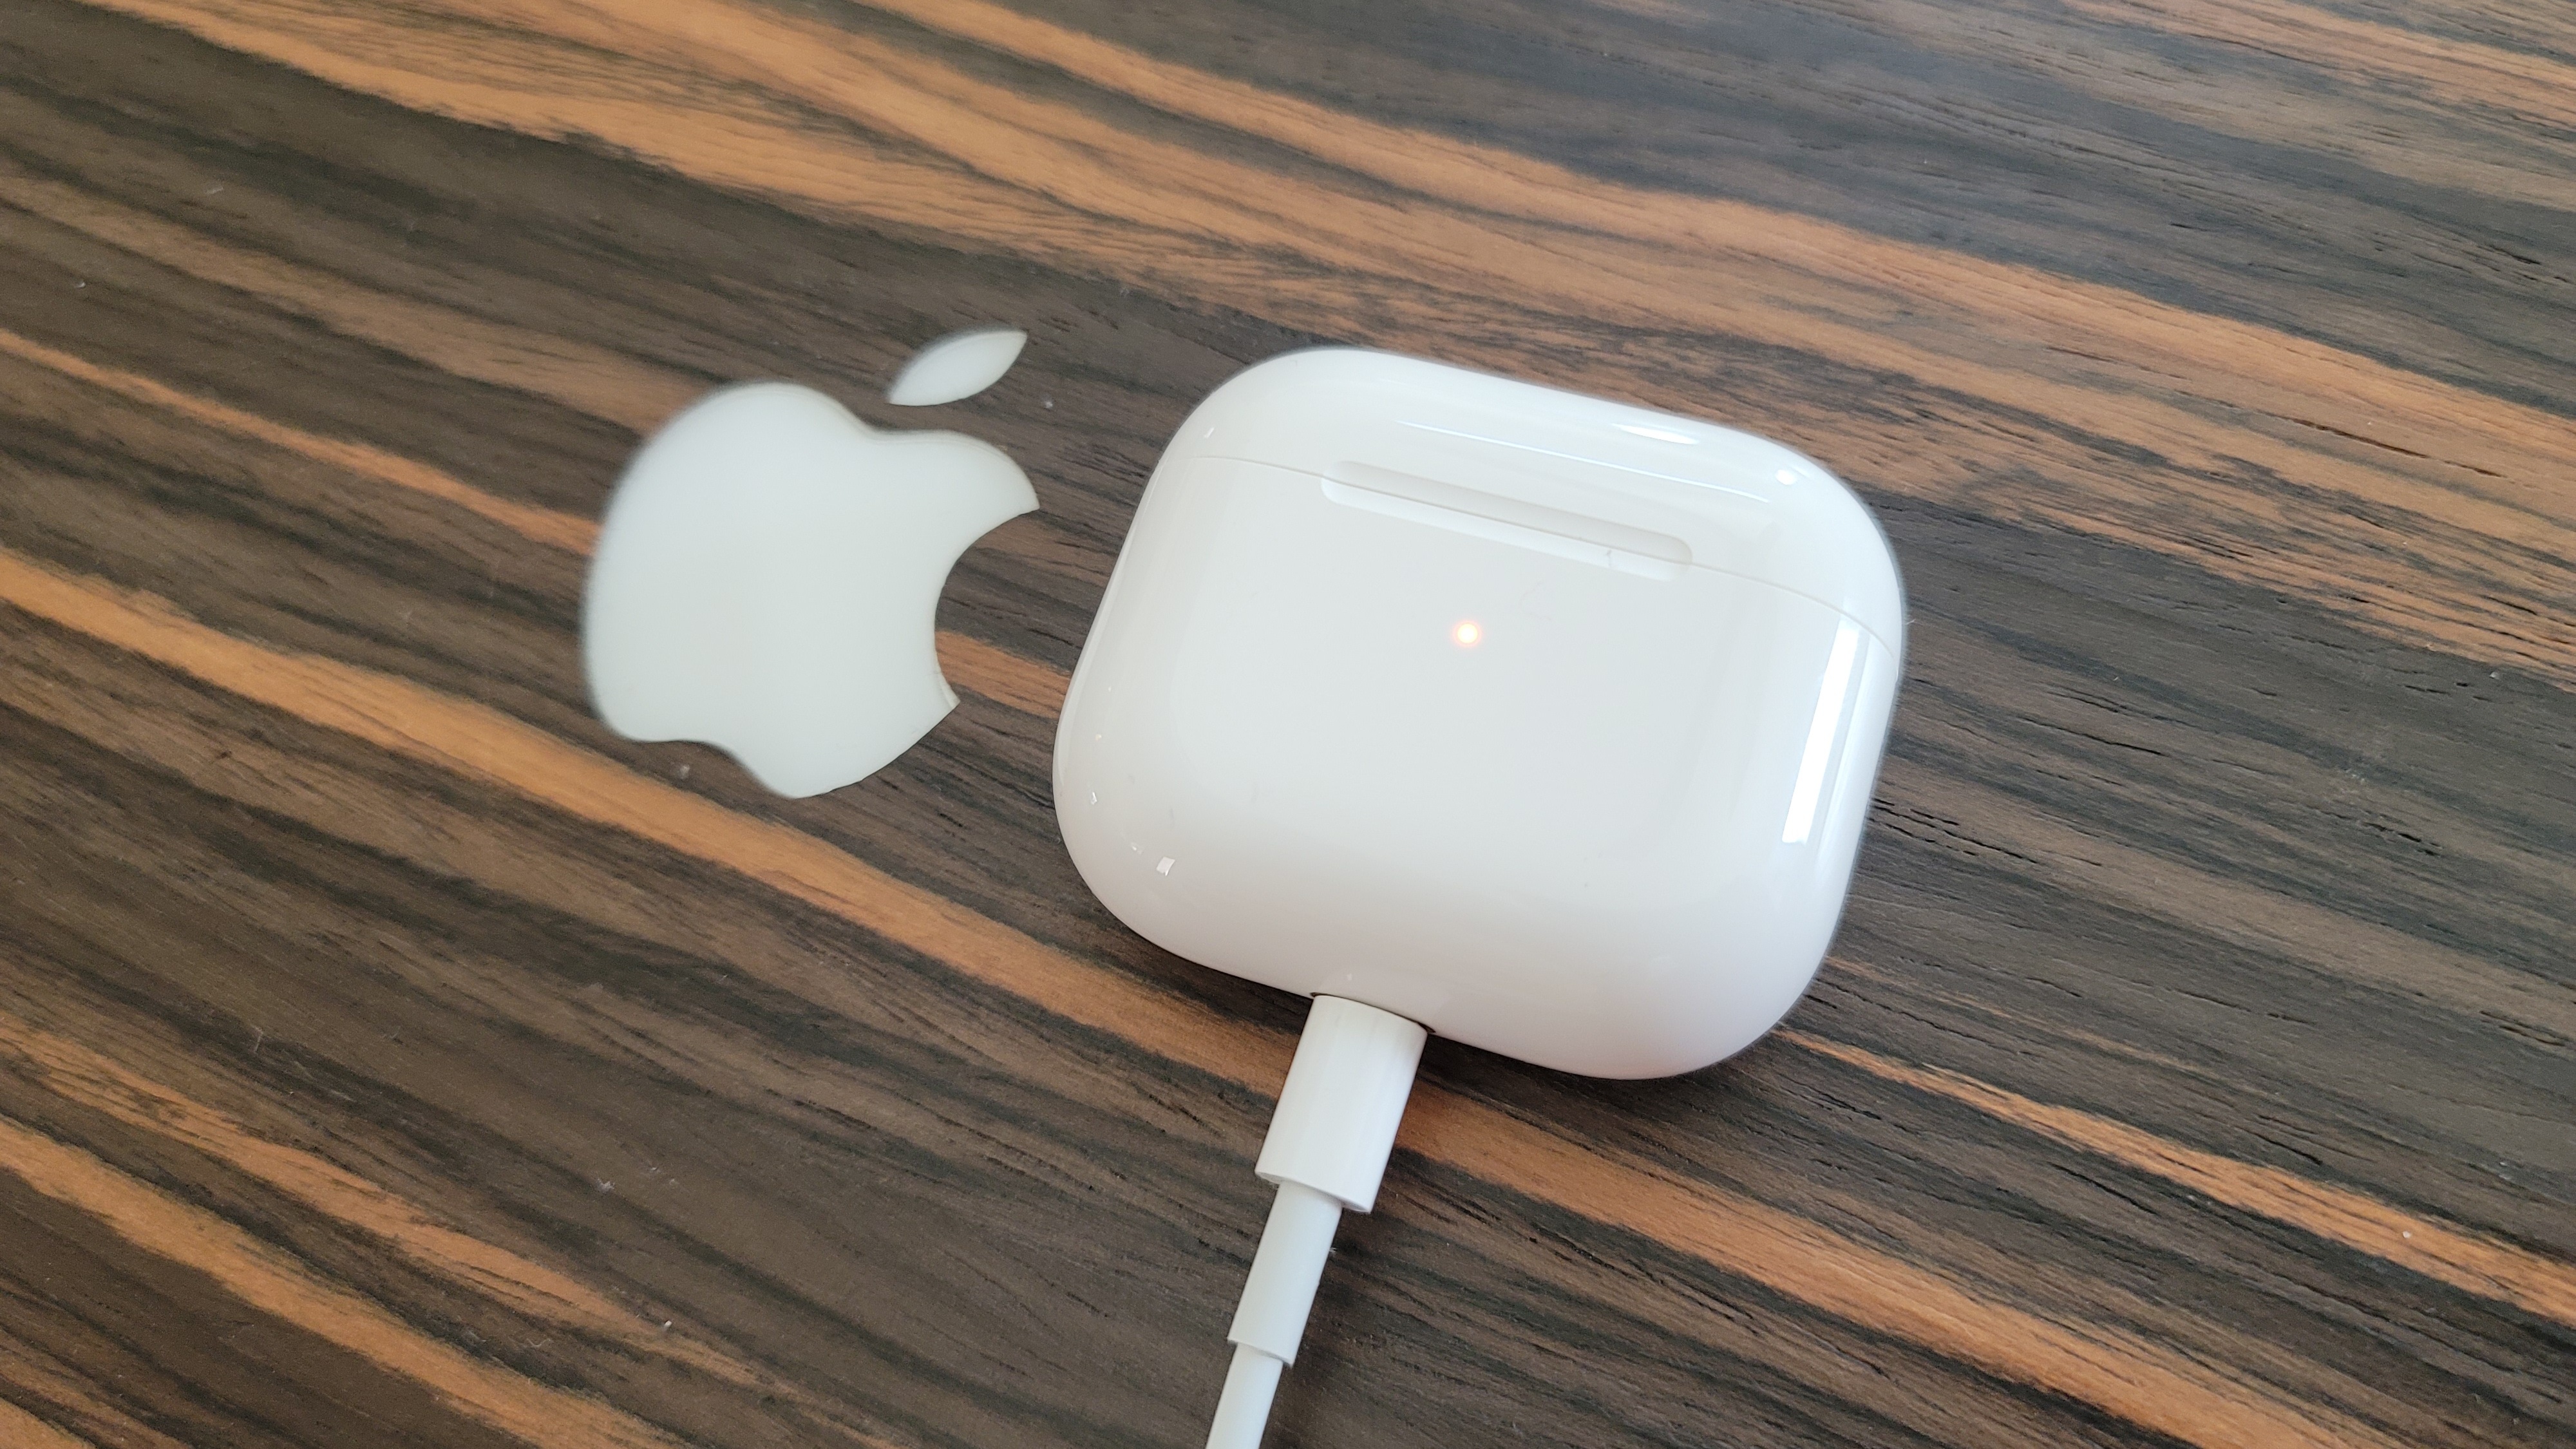 Los Apple AirPods 3 conectados a un cable de carga Lightning